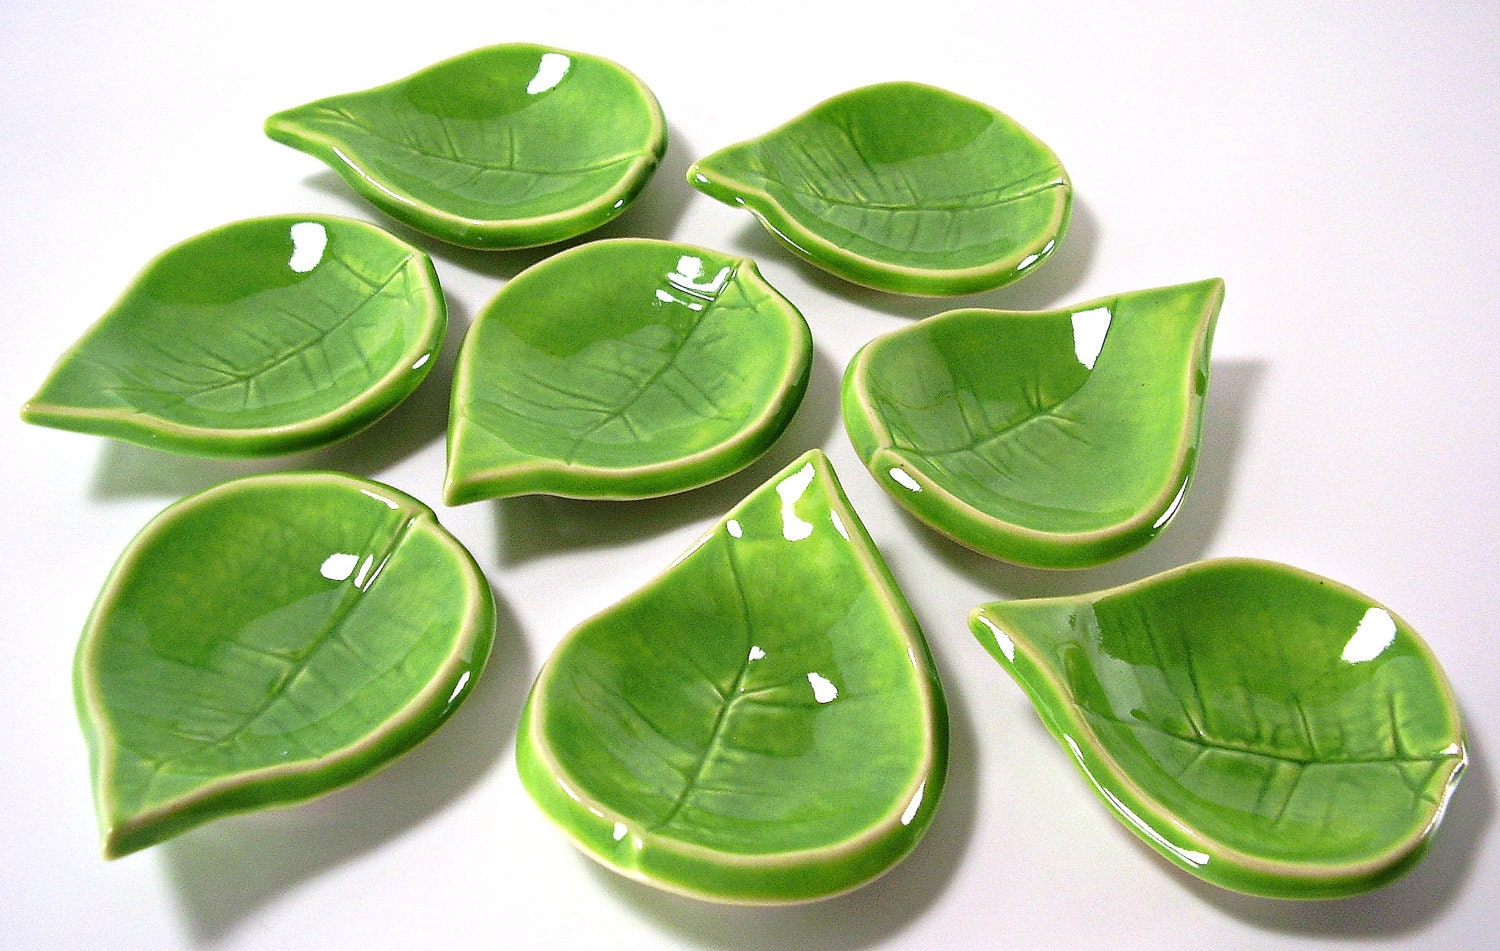 Small Ceramic Leaf - Tea Light Holder/Ring Holder/Spoon Rest/Tea Bag Holder/Home Decor - Handmade Pottery - Spring Decor - Ravenhillpottery